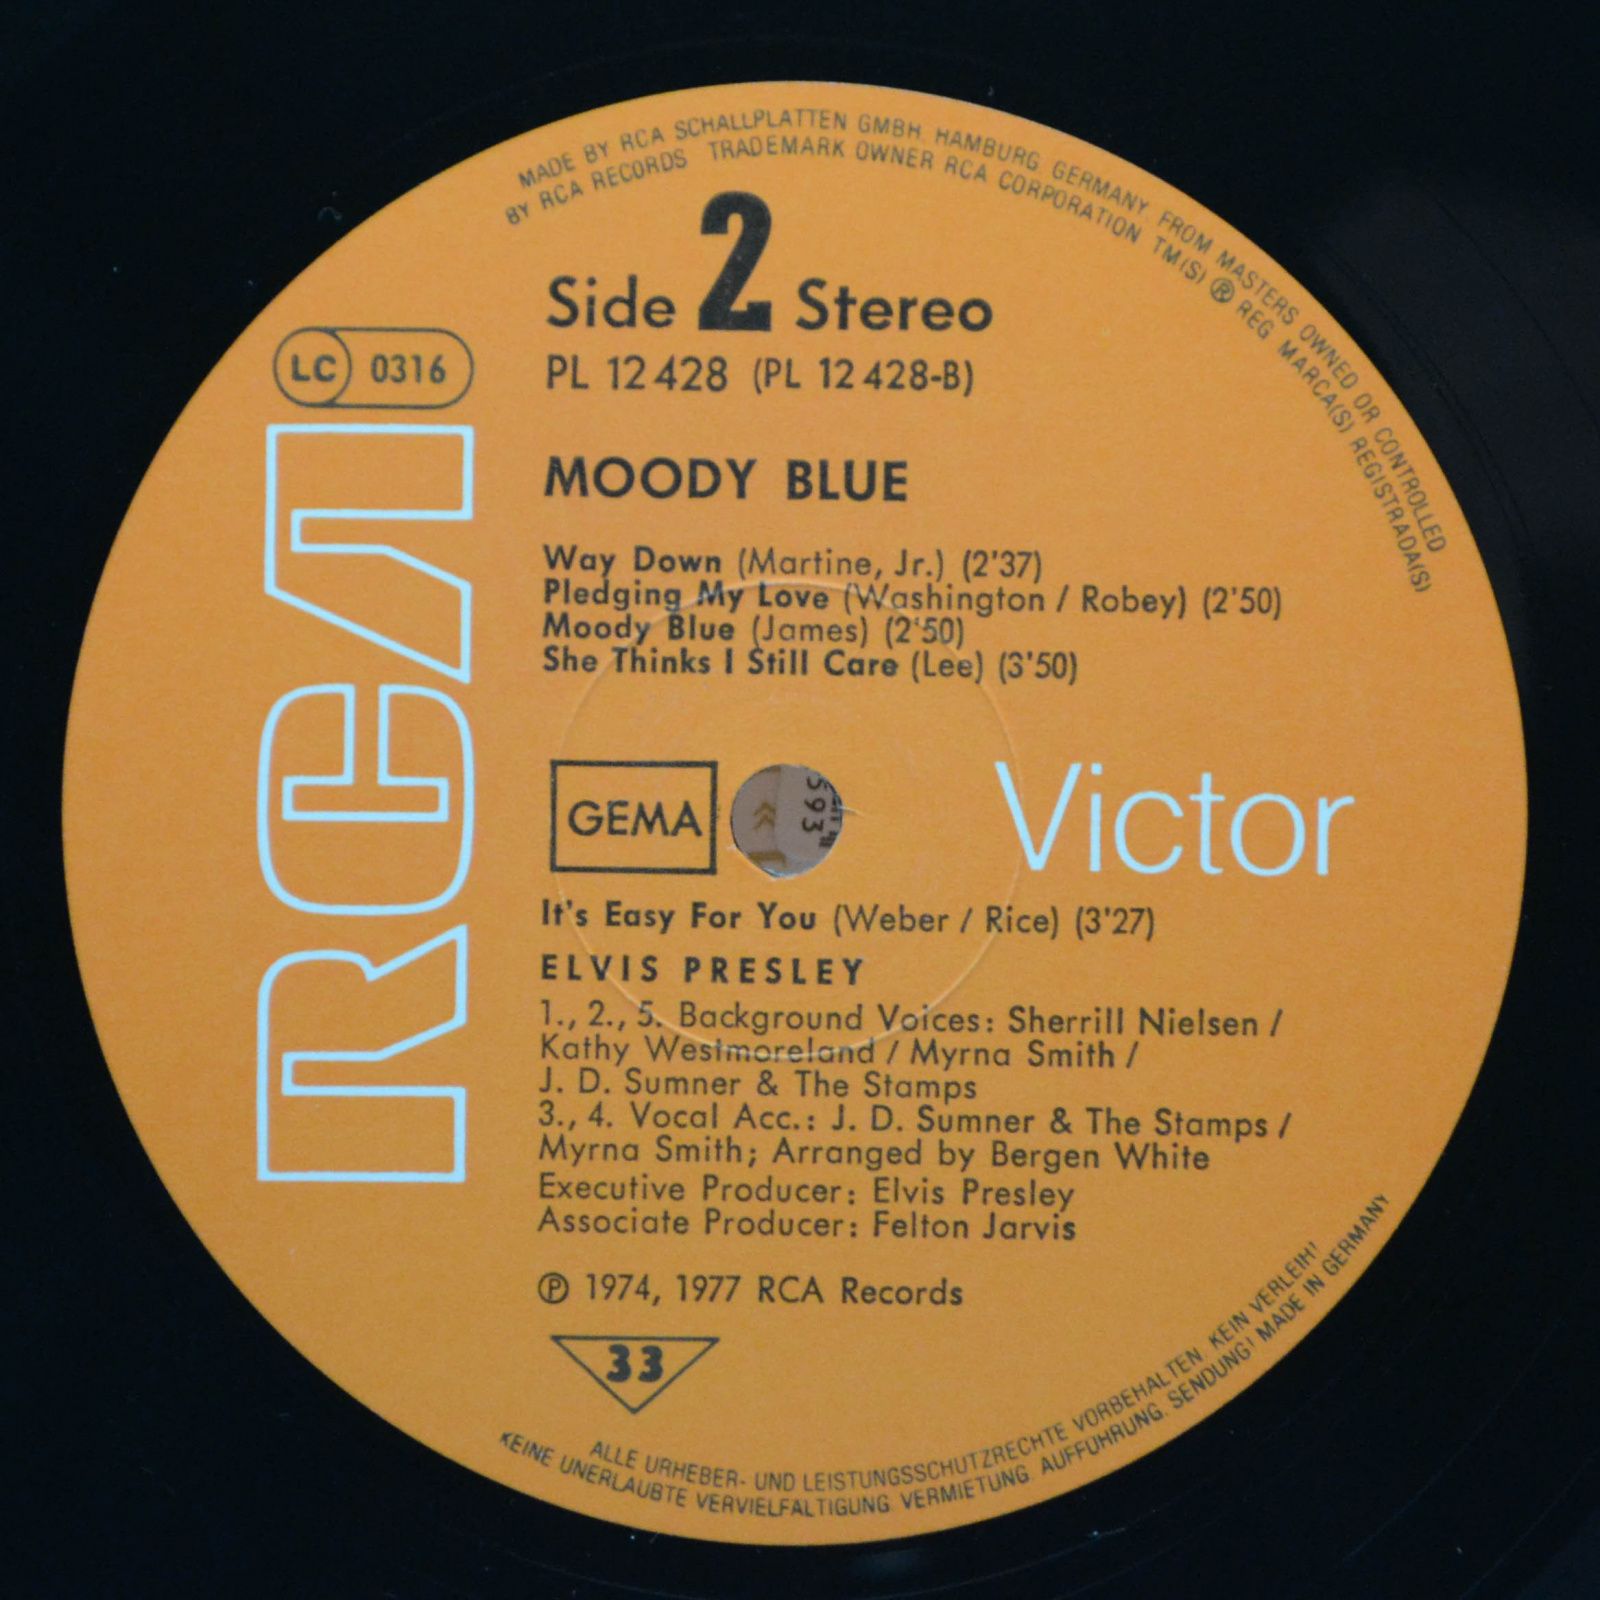 Elvis — Moody Blue, 1977